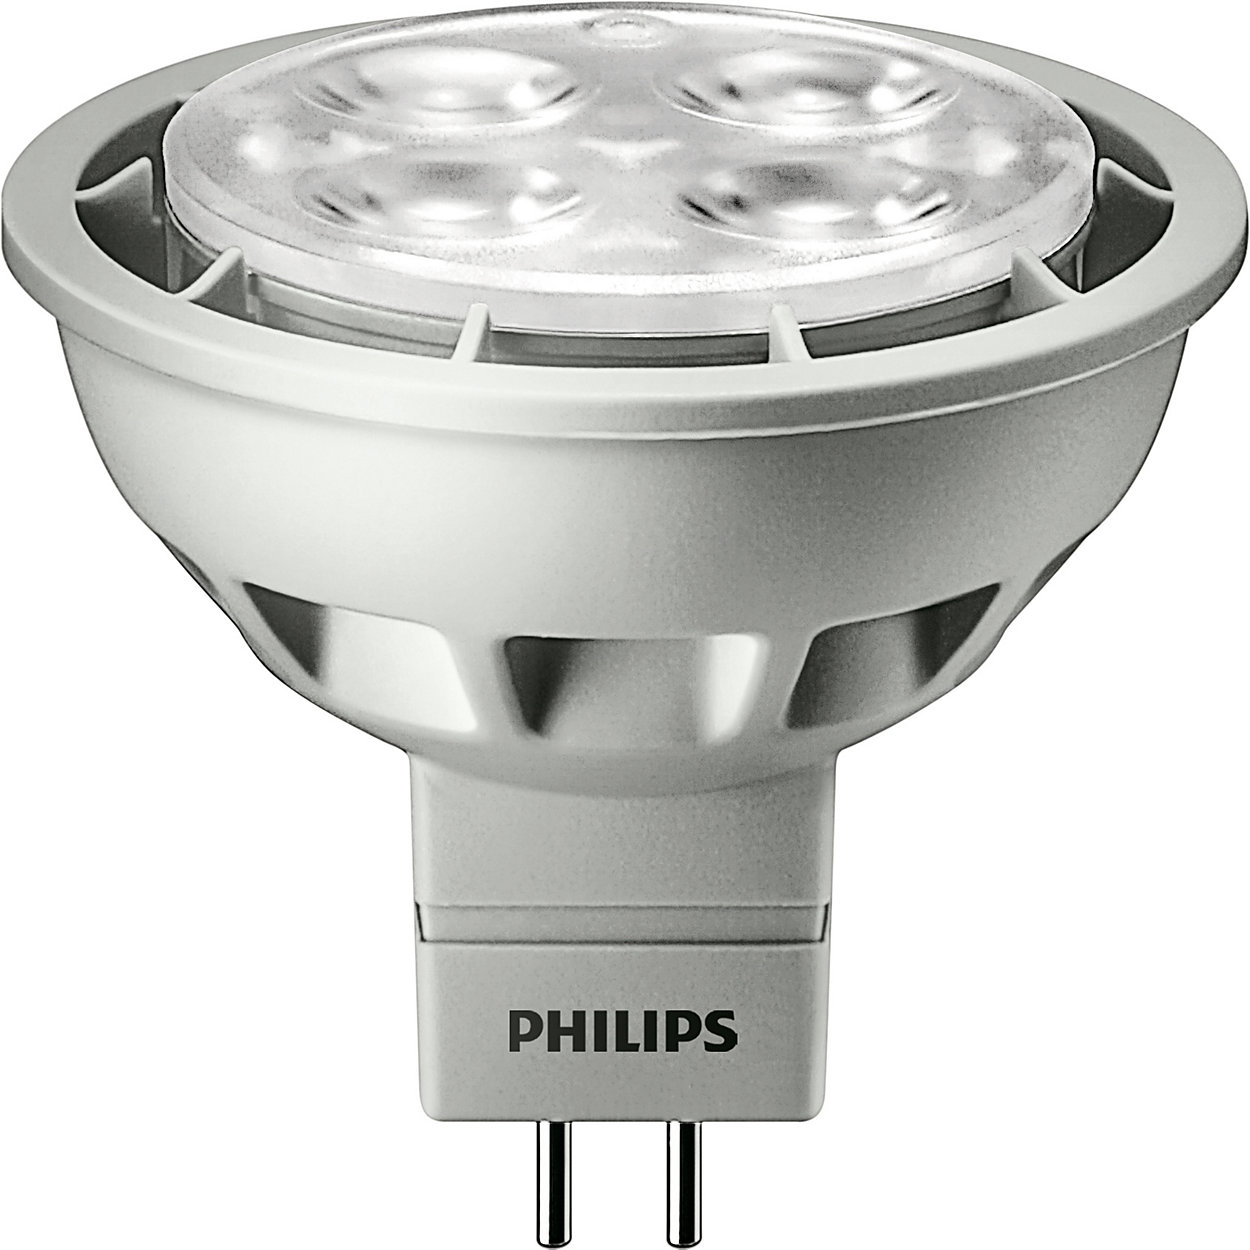 Essential LED - Affordable LED solution